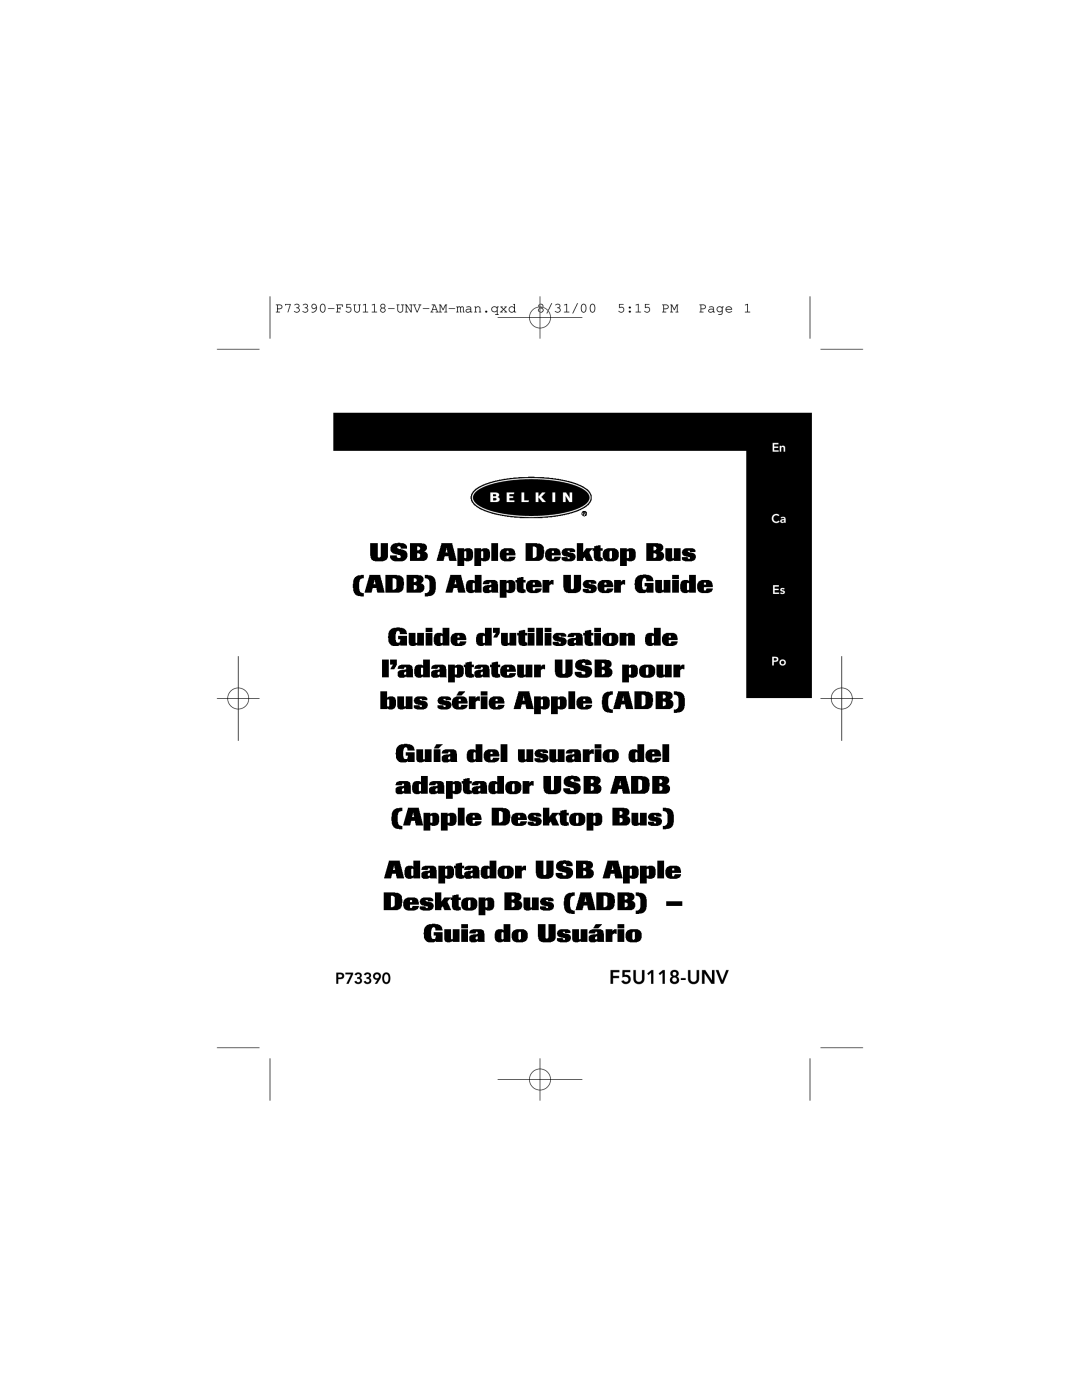 Belkin manual P73390-F5U118-UNV-AM-man.qxd 8/31/00 515 PM Page, USB Apple Desktop Bus ADB Adapter User Guide 